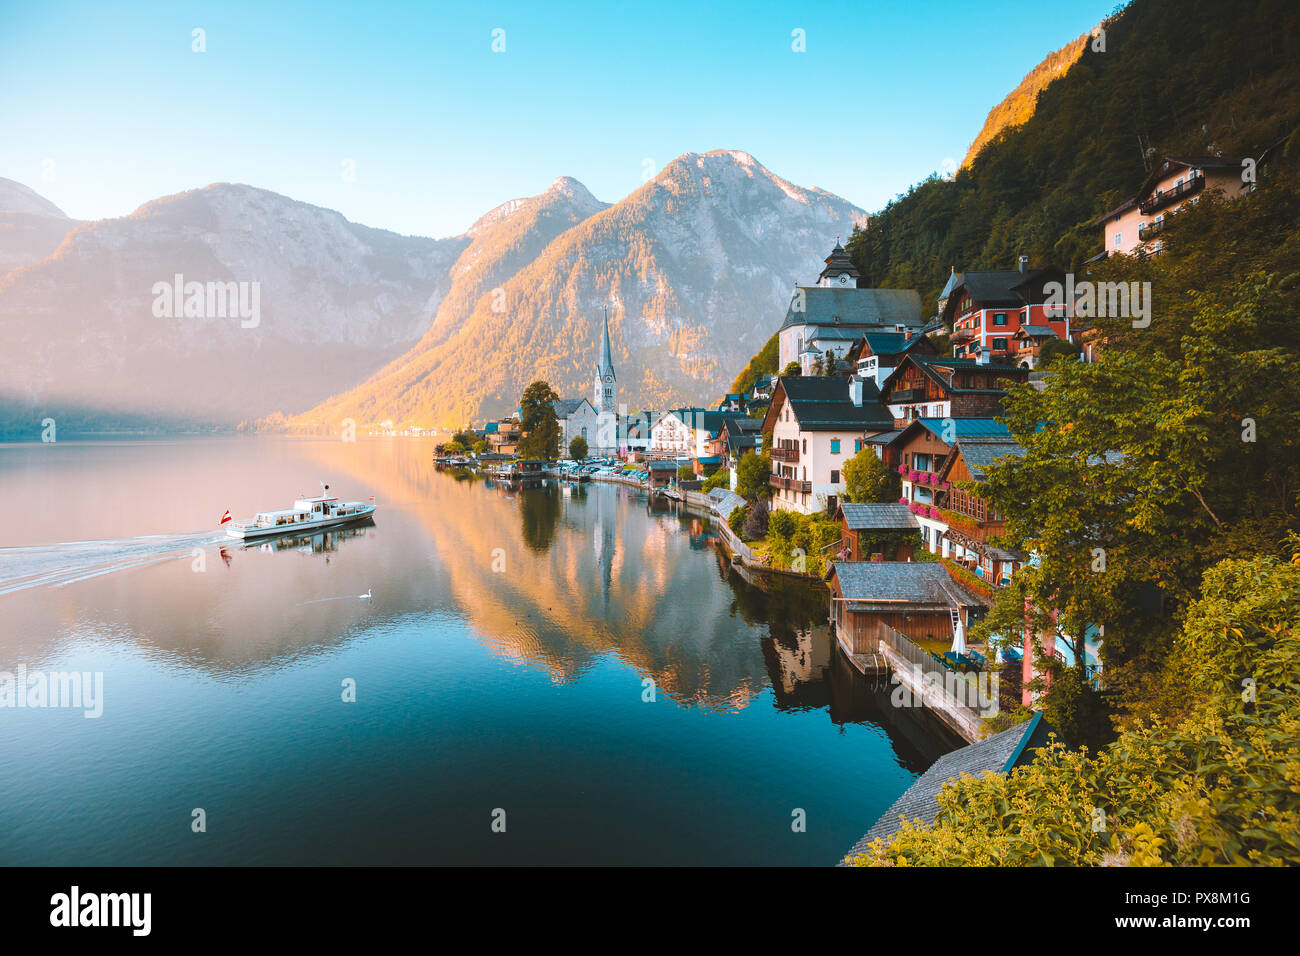 Klassische Postkarte Blick auf berühmte Hallstatt Stadt am See in den Alpen mit traditionellen Fahrgastschiff in den frühen Morgen bei Sonnenaufgang auf einem schönen d Stockfoto